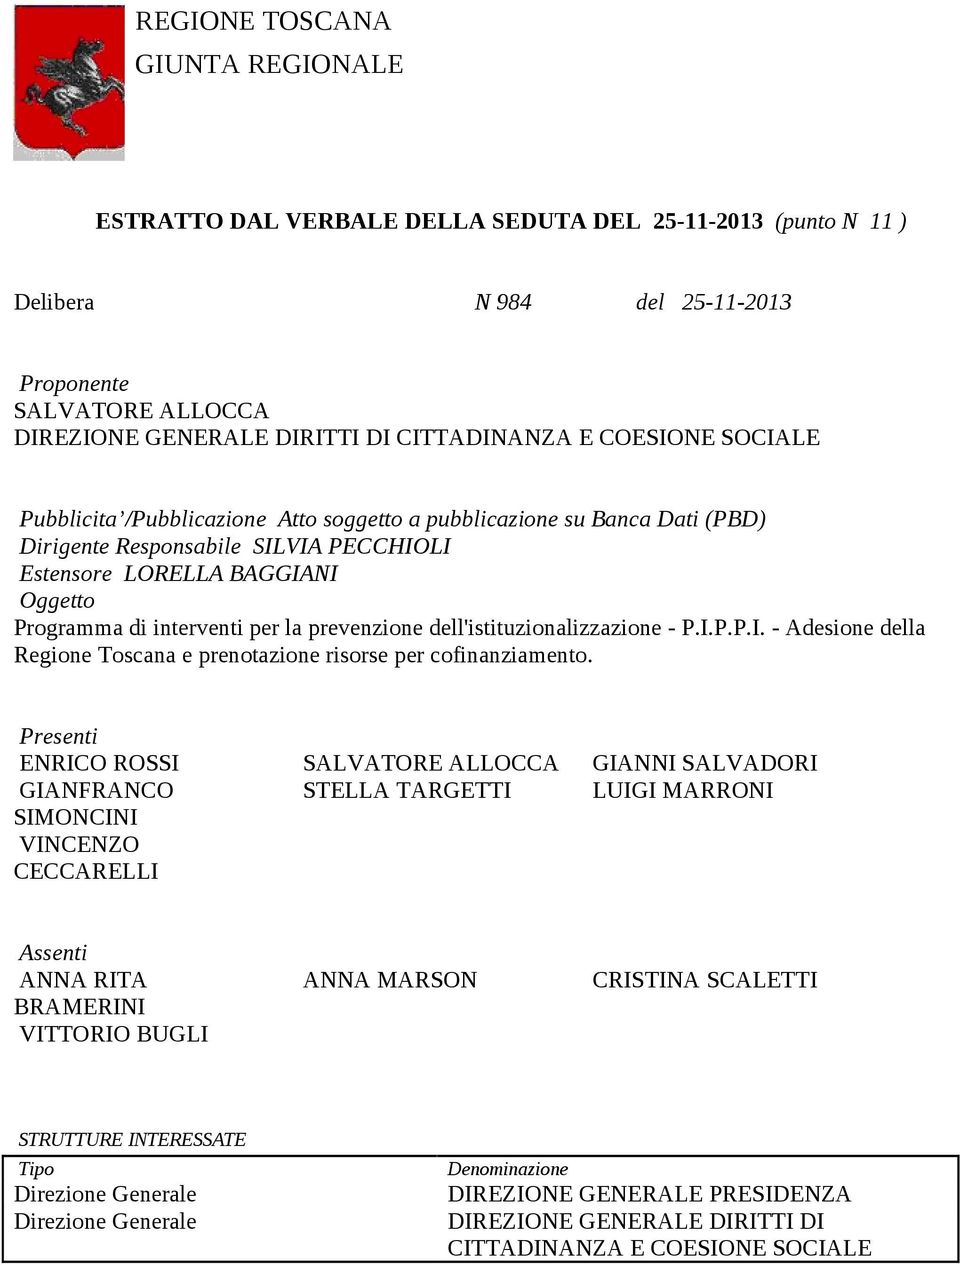 prevenzione dell'istituzionalizzazione - P.I.P.P.I. - Adesione della Regione Toscana e prenotazione risorse per cofinanziamento.